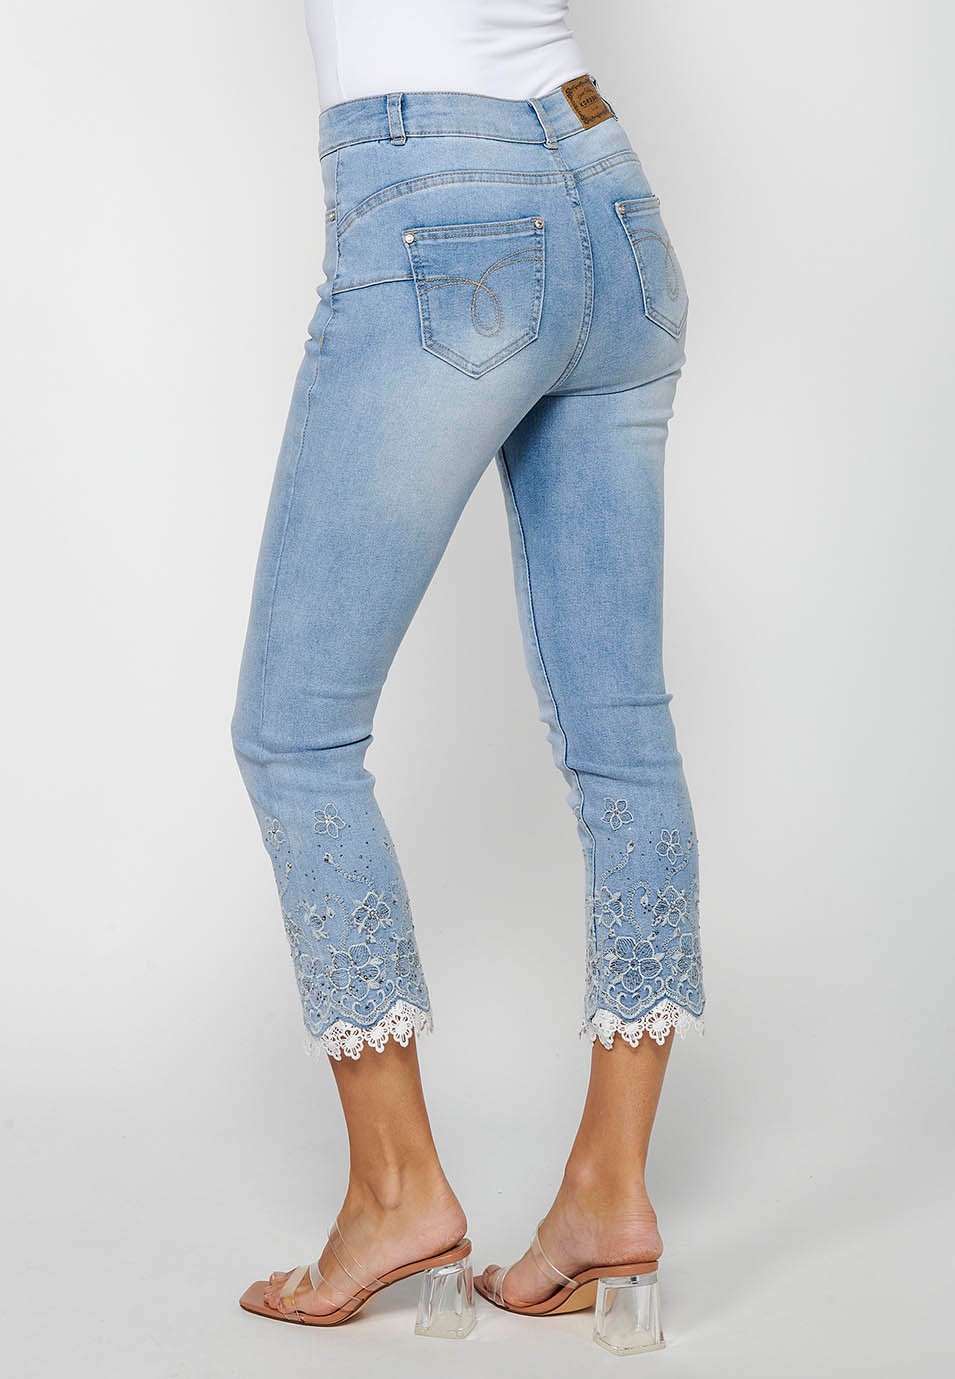 Pantalón largo jeans slim con Cierre delantero con cremallera y Detalles bordados florales de Color Azul claro para Mujer 8